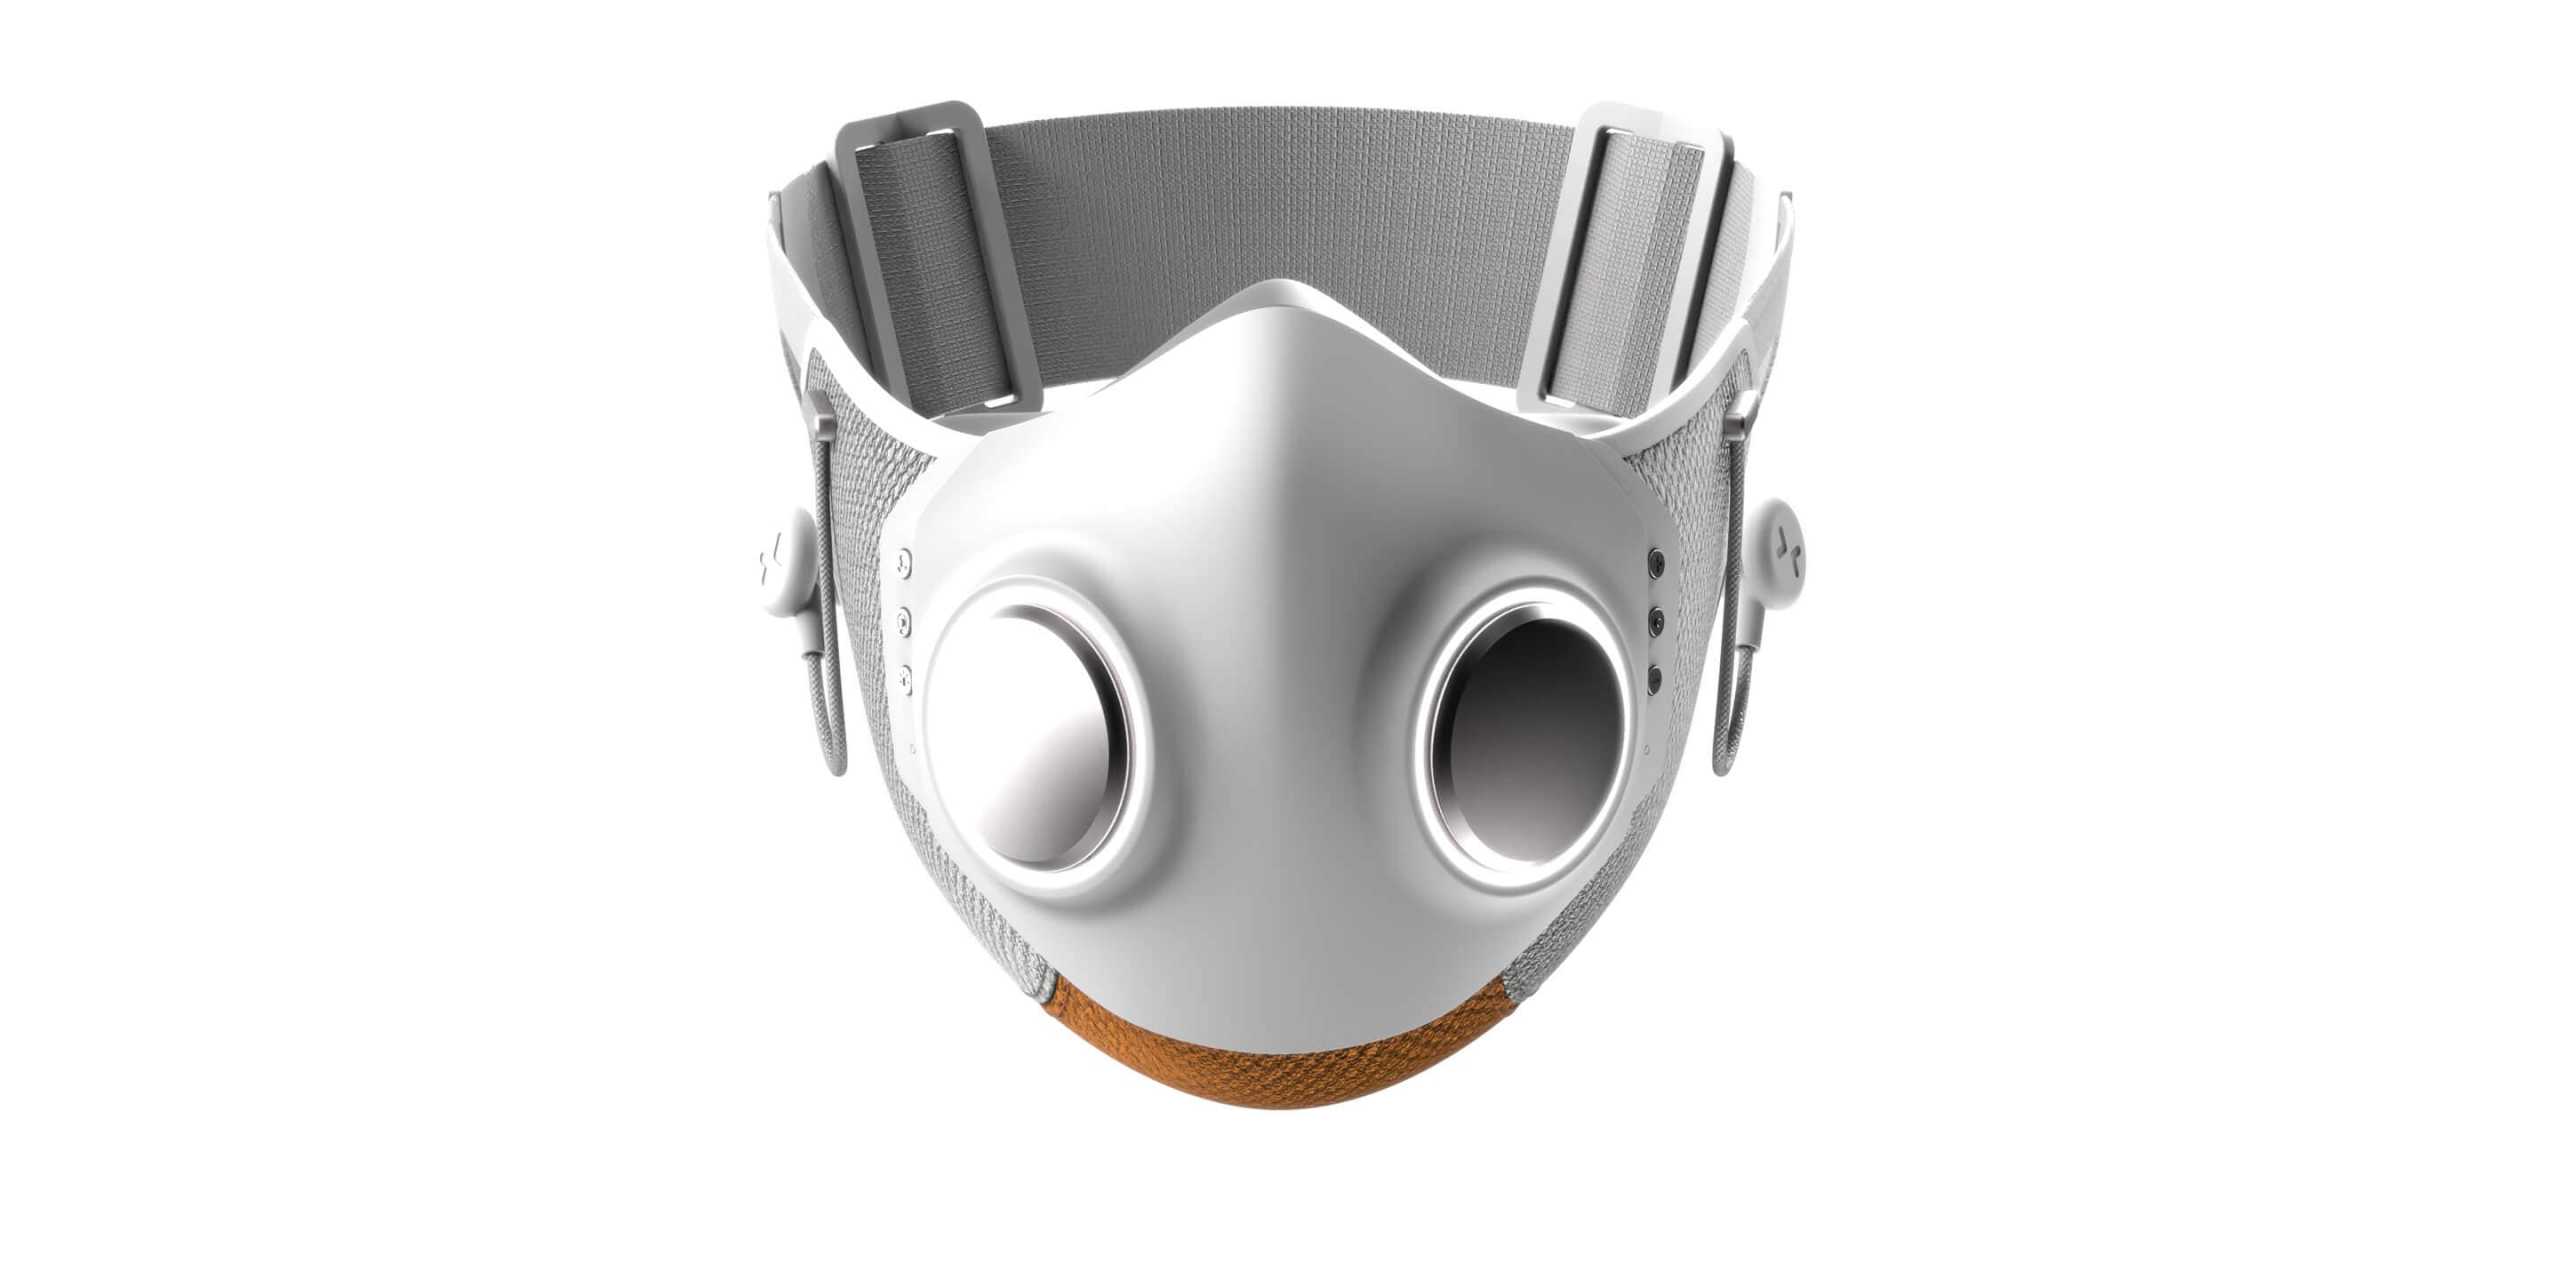 Η πρώτη «έξυπνη» μάσκα για τον κορονοϊό: Ακούς μουσική, κάνει αέρα και έχει LED φωτάκι για το βράδυ (pic, vid)